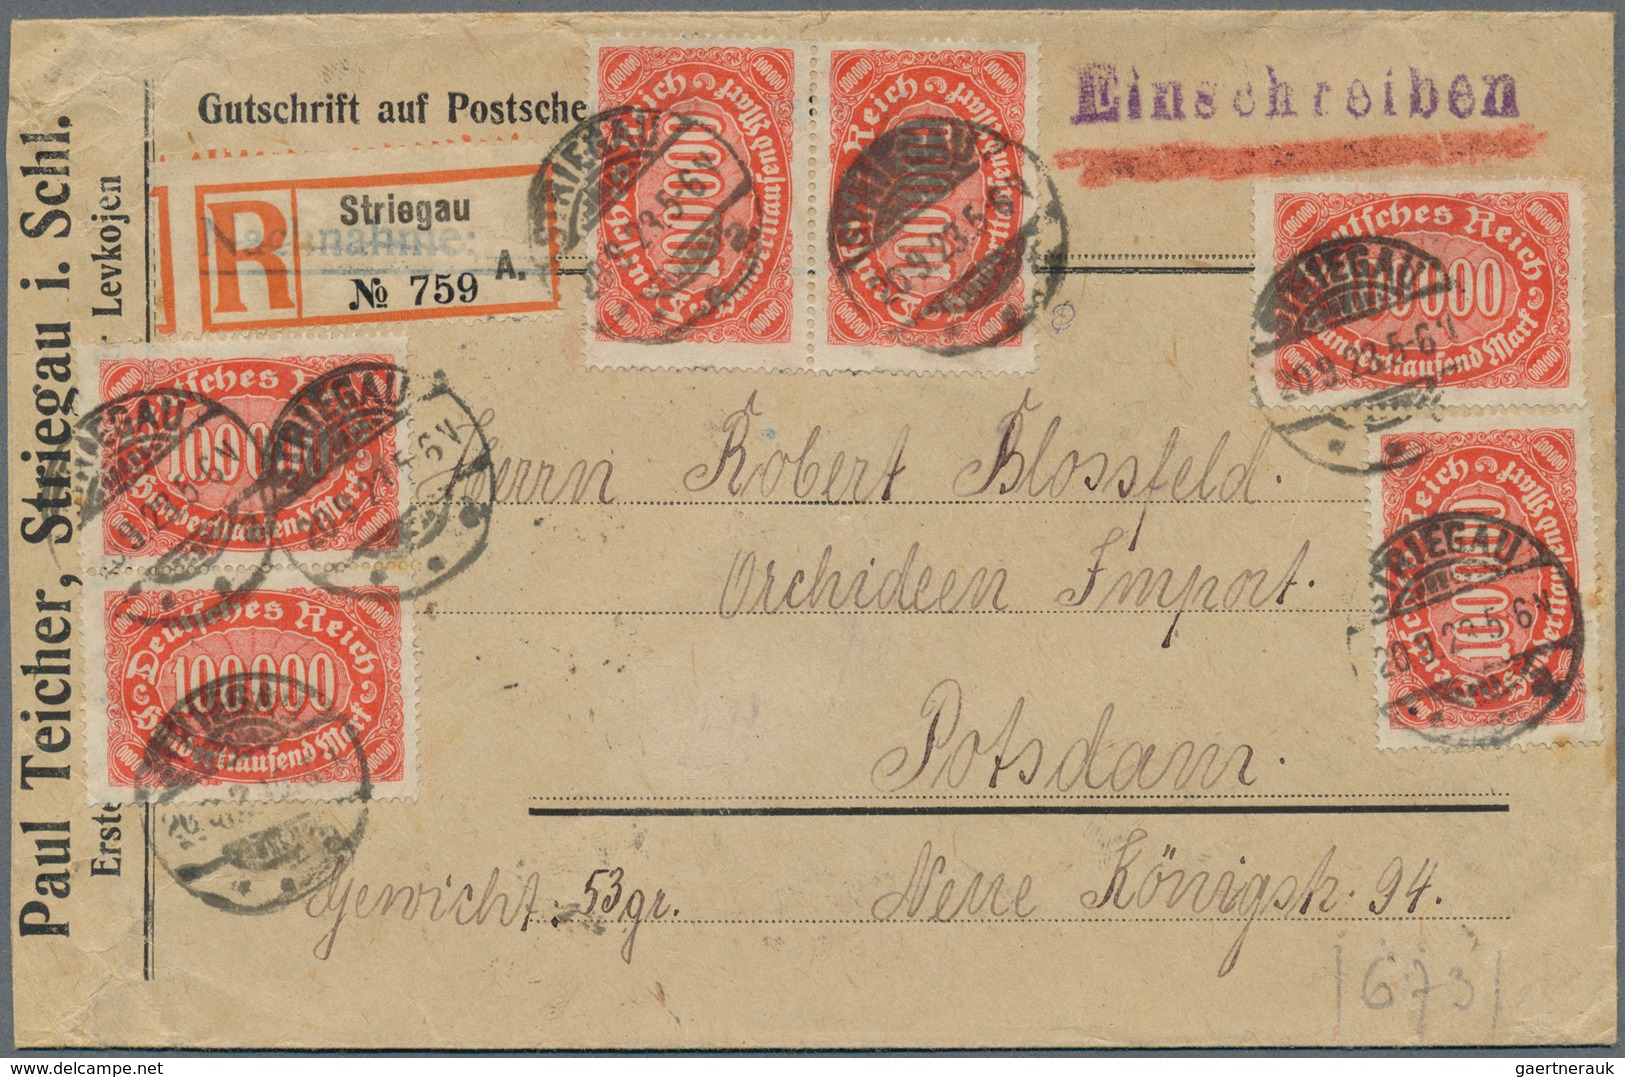 Deutsches Reich - Inflation: 1921-1923, Partie mit über 350 Briefen und Belegen, dabei viele untersc